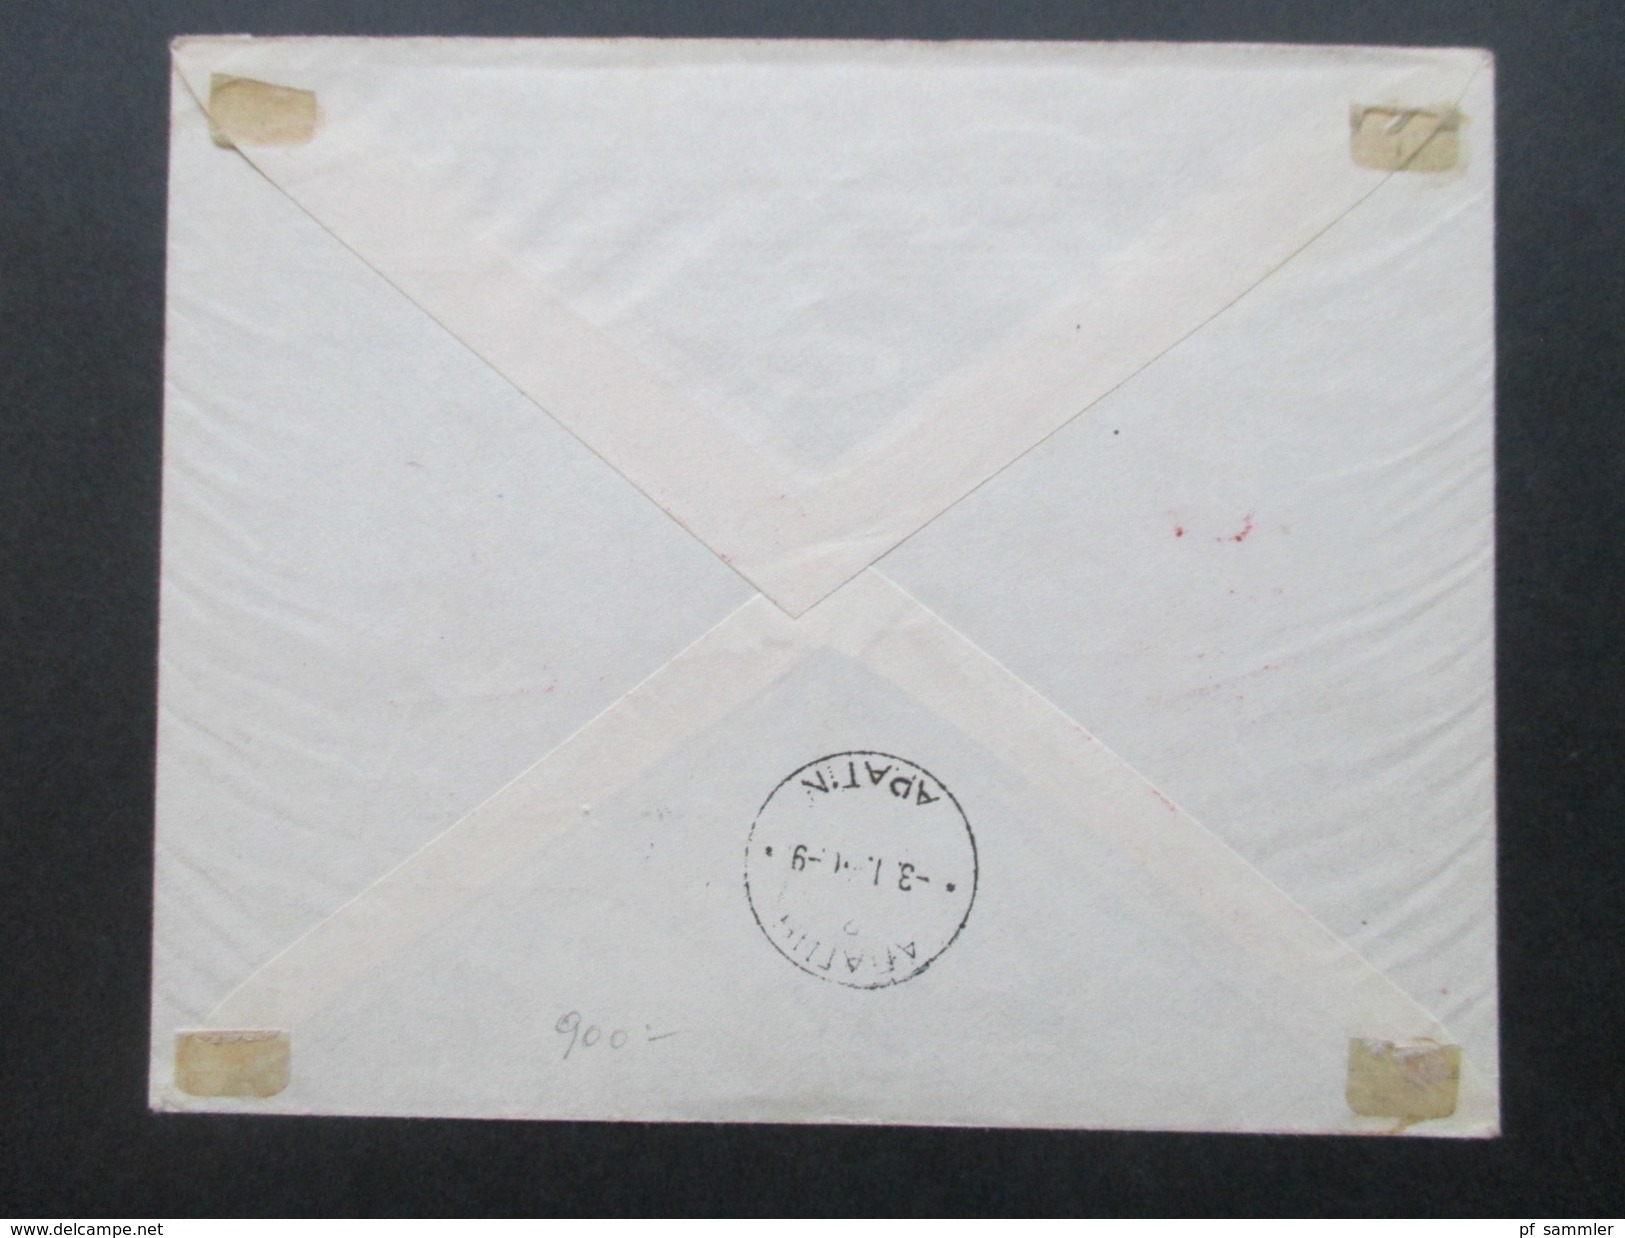 Jugoslawien Königreich 1940 Post Und Telegraphenbeamte Nr. 408 - 412 FDC / Einschreiben Mit Rotem Sonderstempel!! - Covers & Documents